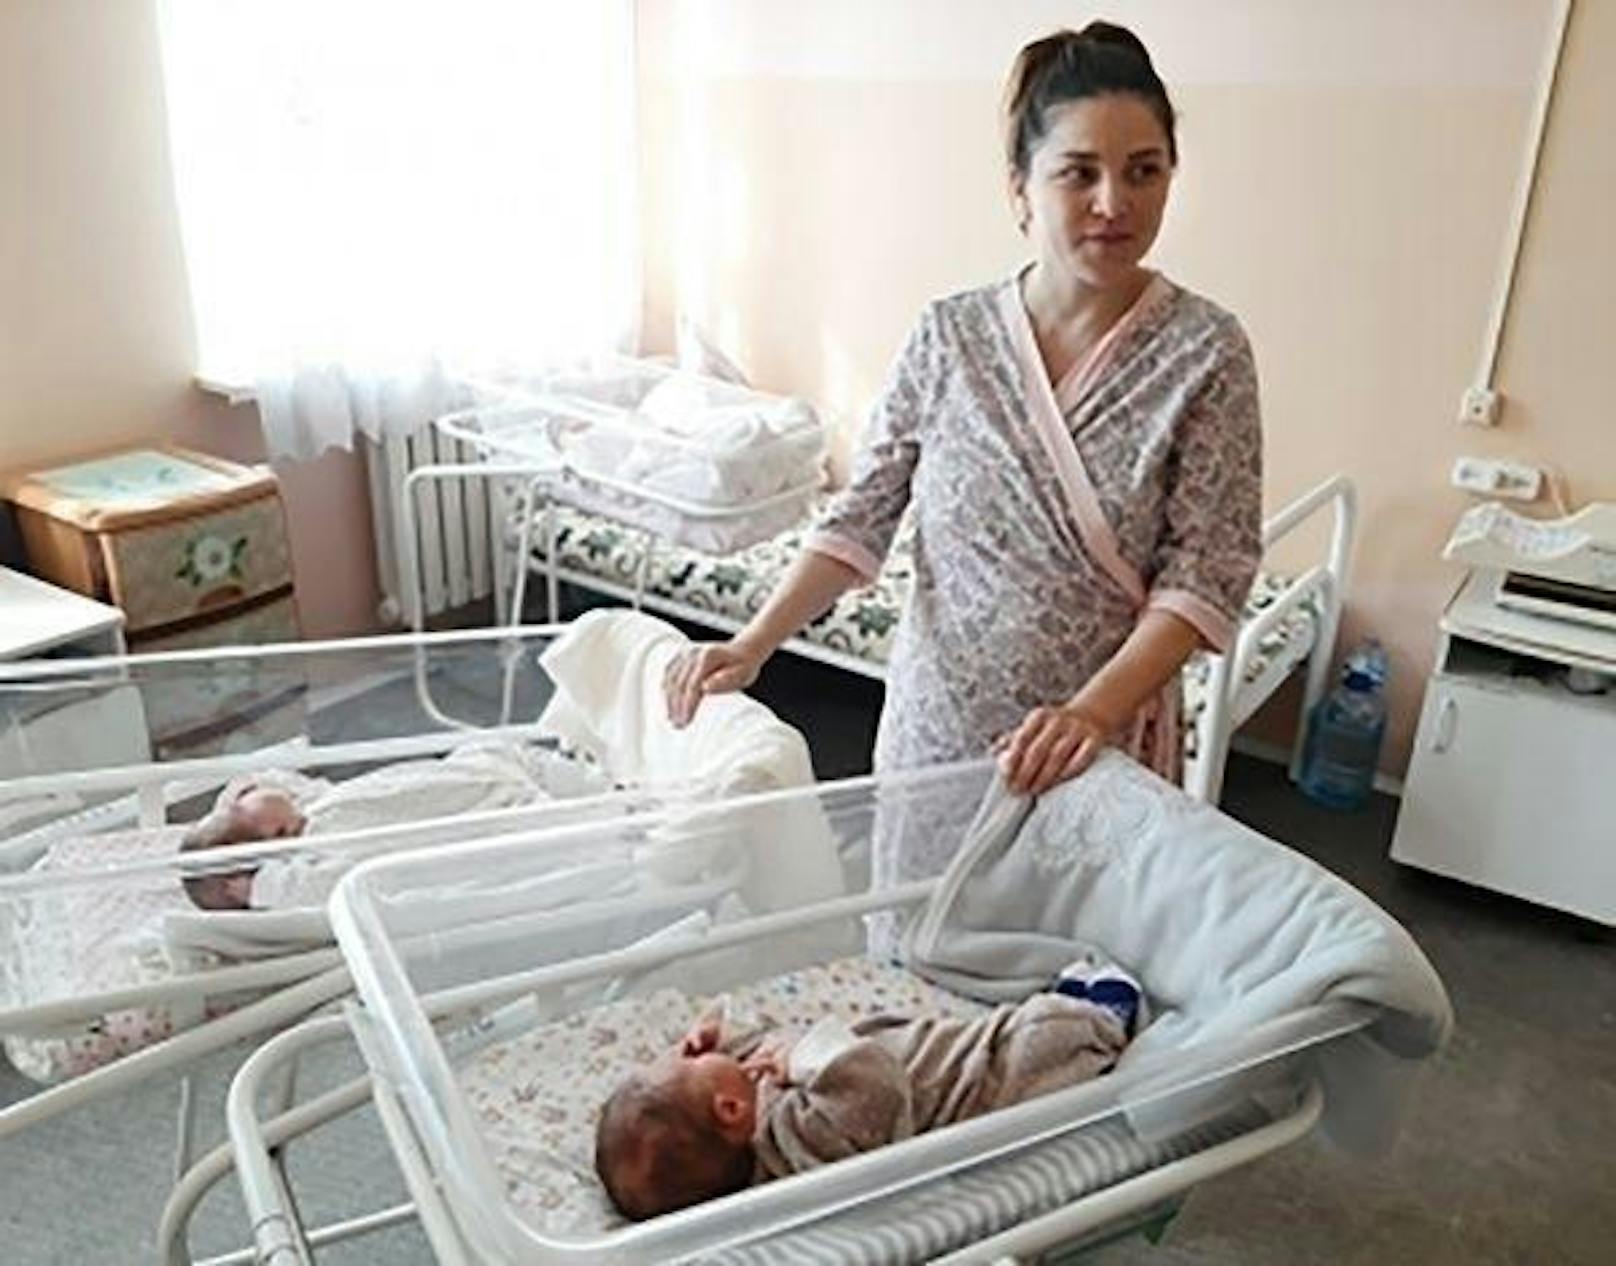 Mutter Liliya Konovalova hat die beiden nämlich im Abstand von rund 11 Wochen geboren, was nur äußerst selten vorkommt.